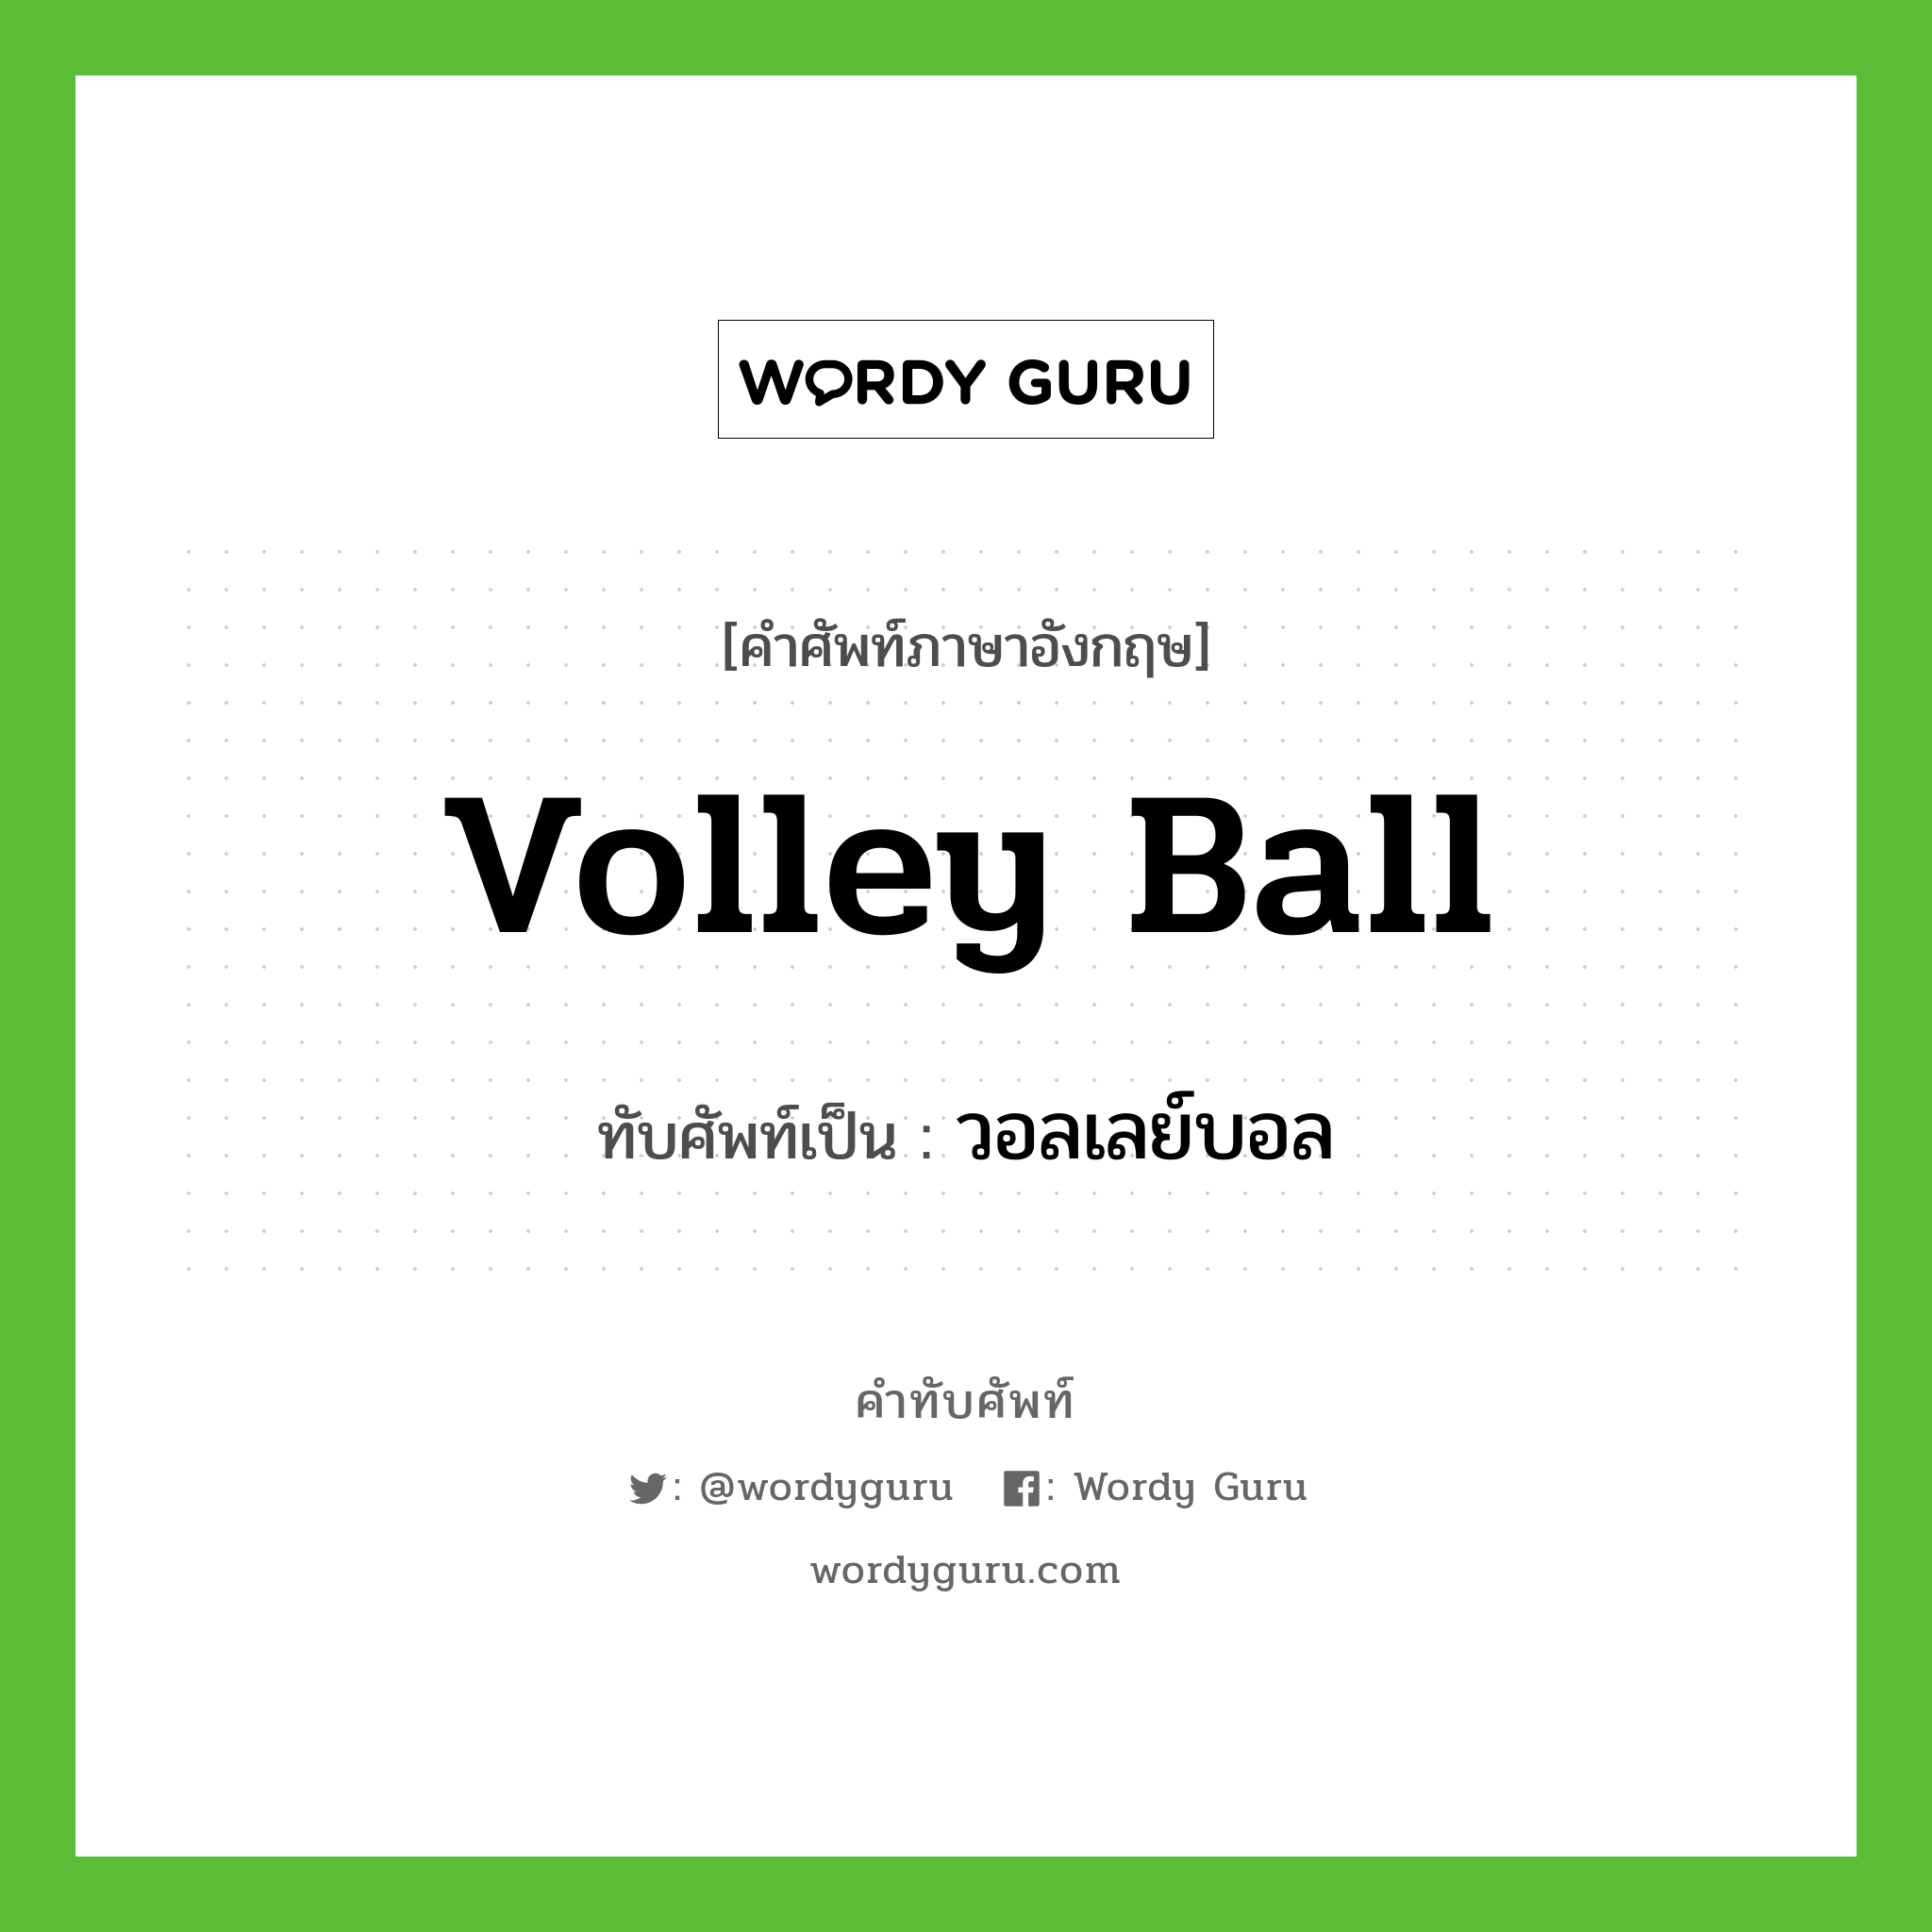 วอลเลย์บอล เขียนอย่างไร?, คำศัพท์ภาษาอังกฤษ วอลเลย์บอล ทับศัพท์เป็น volley ball